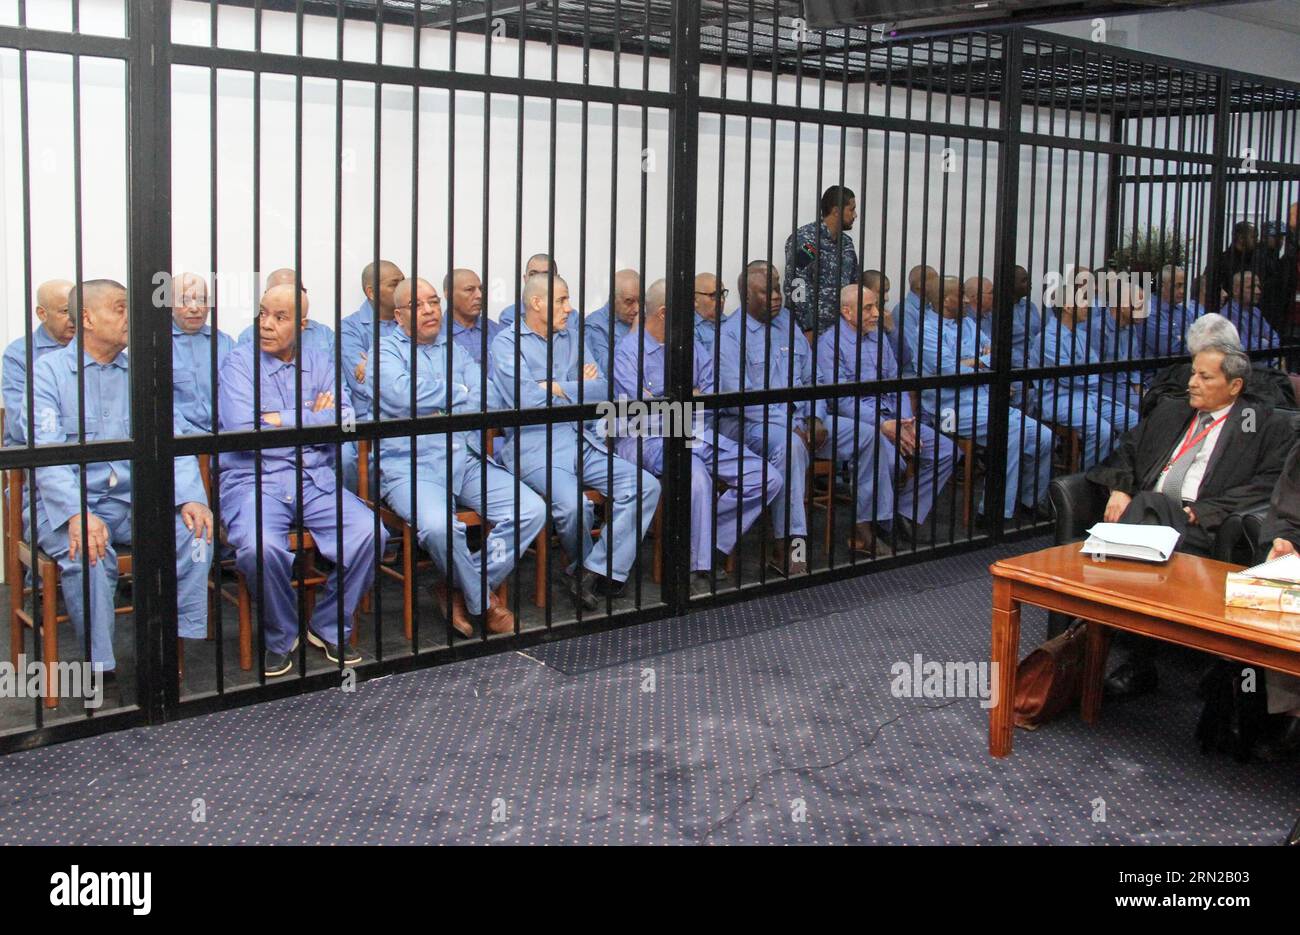 (150222) -- TRIPOLI, 22. Februar 2015 -- ehemalige libysche Regierungsbeamte werden am 22. Februar 2015 vor Gericht in Tripoli, der Hauptstadt Libyens, gesehen. Das Gericht setzte am Sonntag den Prozess gegen Dutzende hochrangiger Beamter der Regierung des ehemaligen libyschen Führers Muammar Gaddafi fort. ) LIBYEN-TRIPOLI-EHEMALIGE BEAMTE-PROZESS HamzaxTurkia PUBLICATIONxNOTxINxCHN Tripoli 22. Februar 2015 ehemalige libysche Regierungsbeamte sind Seen vor Gericht in Tripoli Hauptstadt von Libyen AM 22. Februar 2015 das Gericht setzte AM Sonntag die Verhandlung von Dutzenden von hochrangigen Beamten des ehemaligen libyschen Führers Muammar Gaddafi S Regierung Libyen Tripoli ehemaligen fort Stockfoto